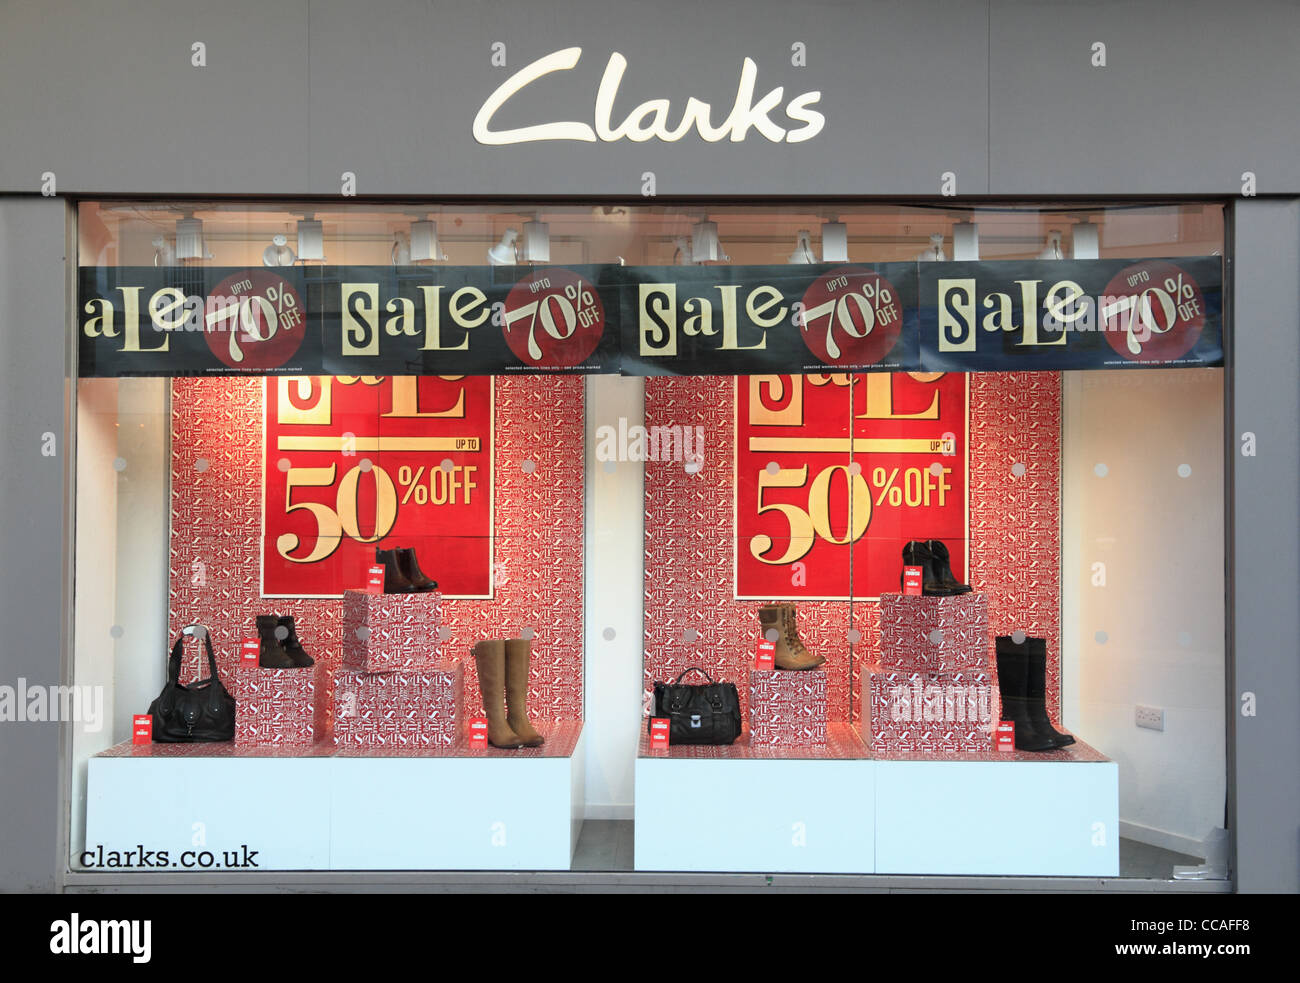 clarks shoe shop sale